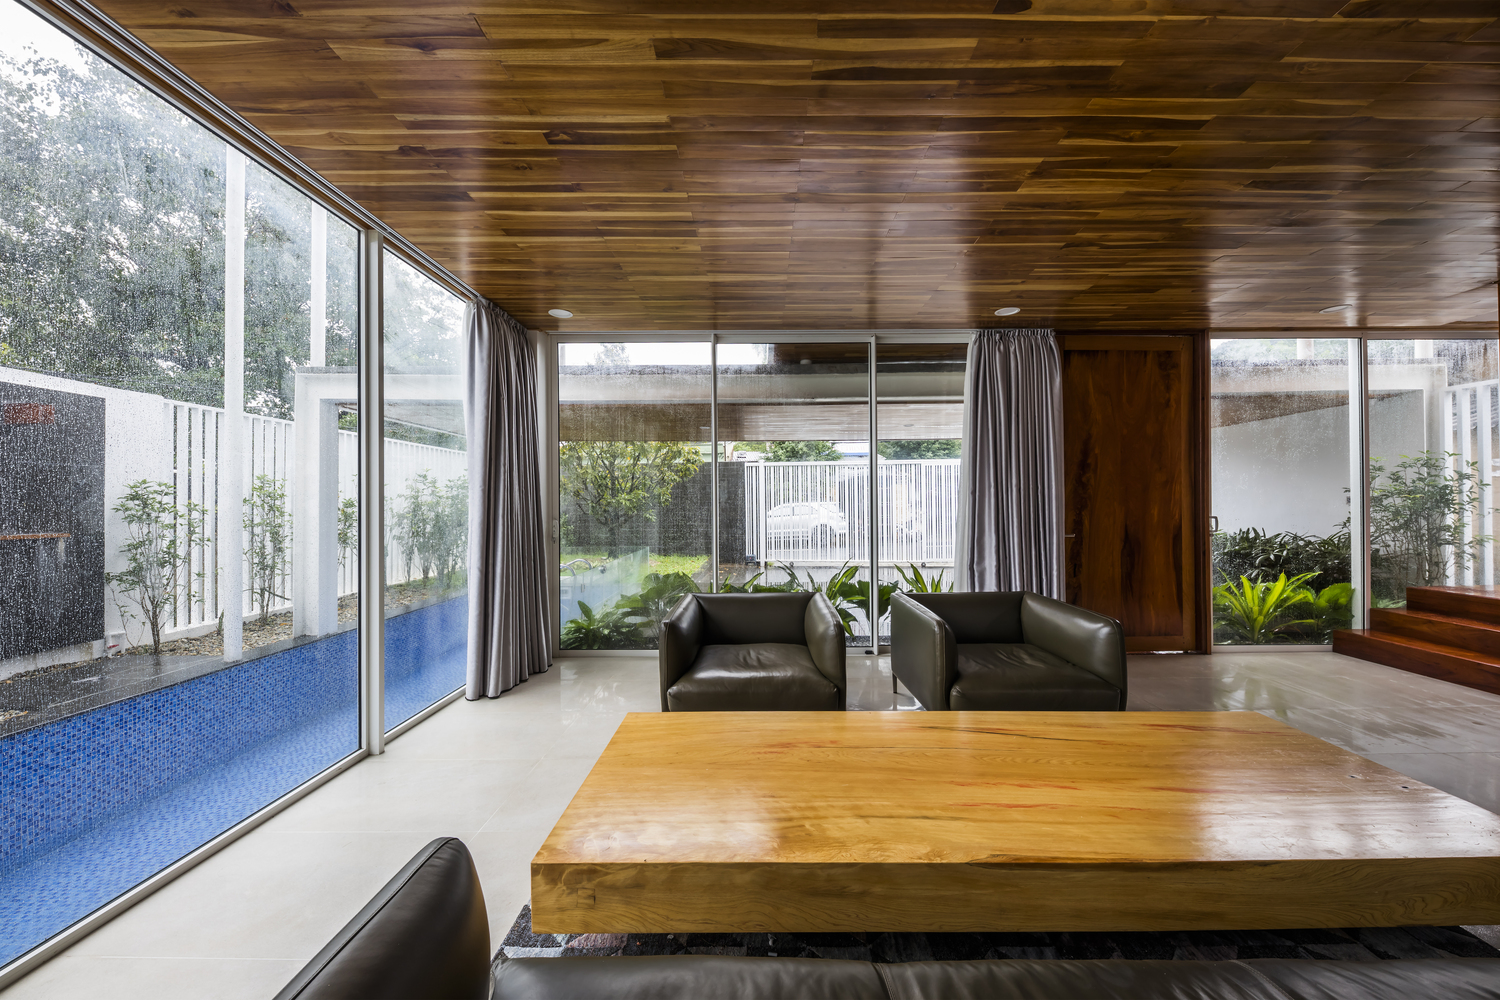 Hệ thống trần nhà ốp gỗ cho cảm giác vừa hiện đại vừa sang trọng, lại rất gần gũi và ấm cúng, thân thiện với người dùng.